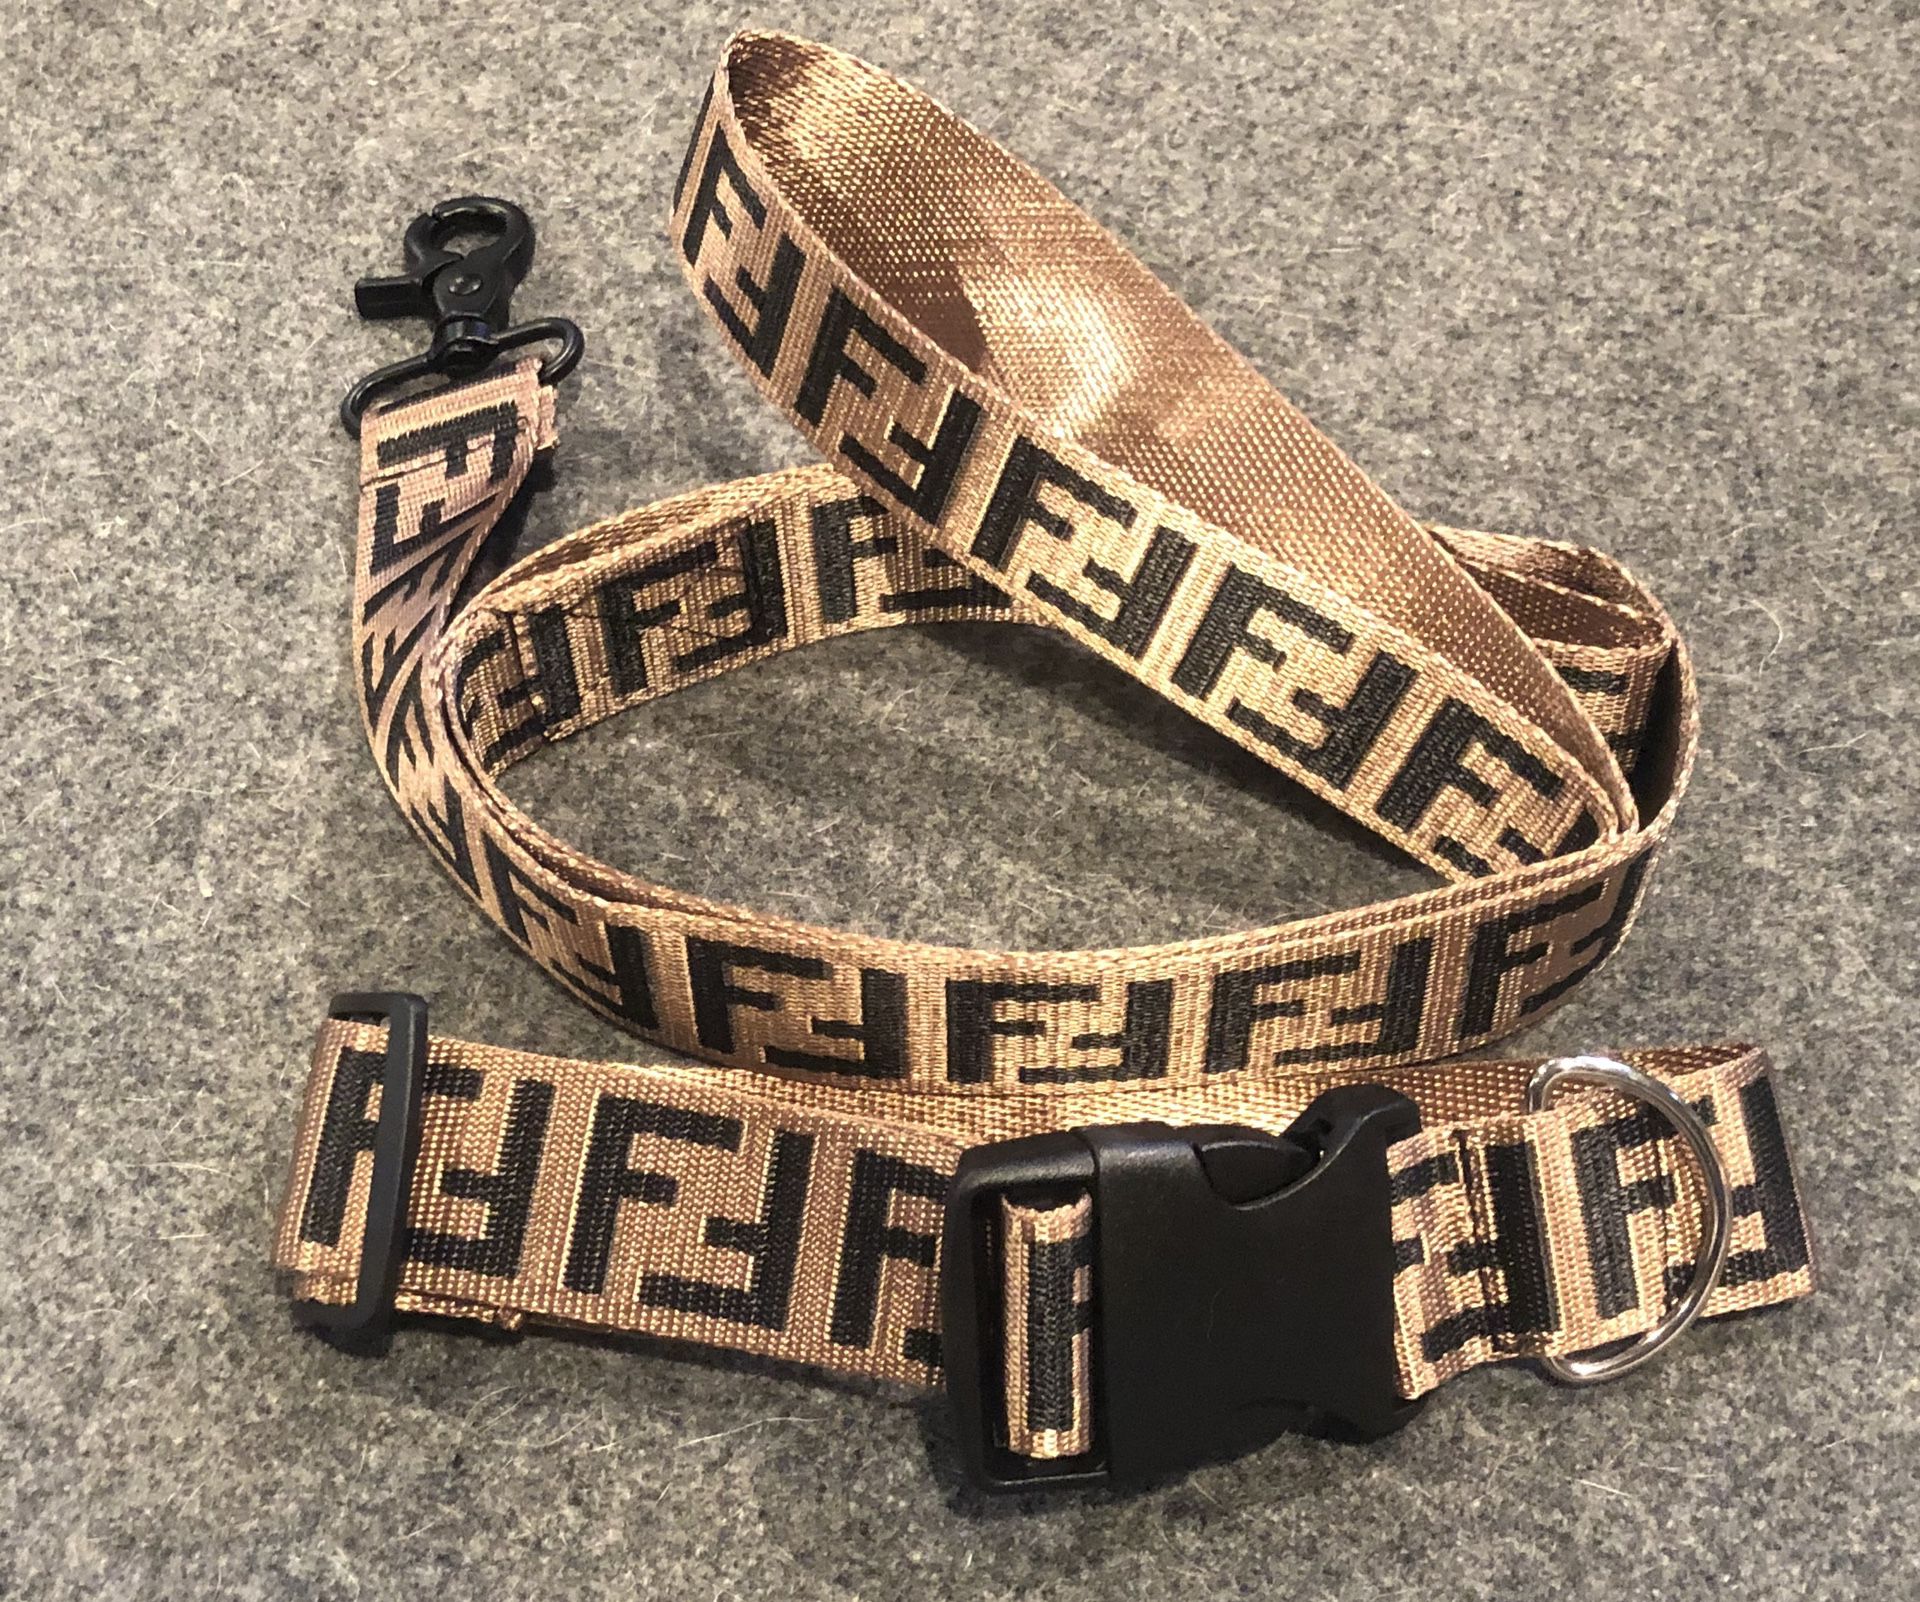 FF Designer Dog Leash & Collar Set. Harness sold separately.